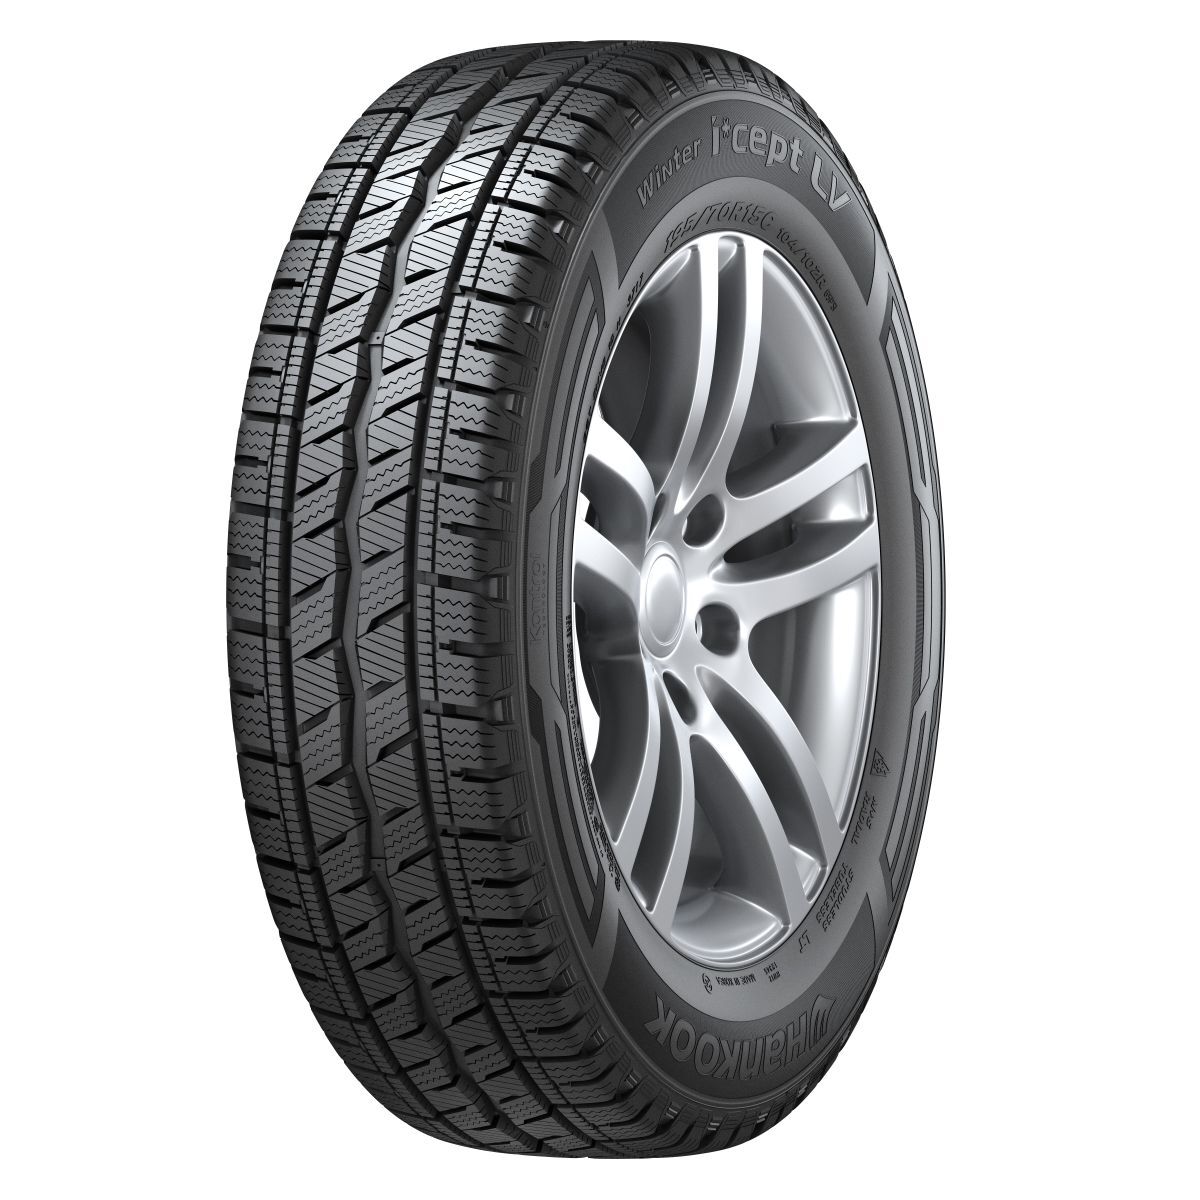 Neumáticos de invierno HANKOOK Winter I*cept LV RW12 205/70R15C, 106/104R TL